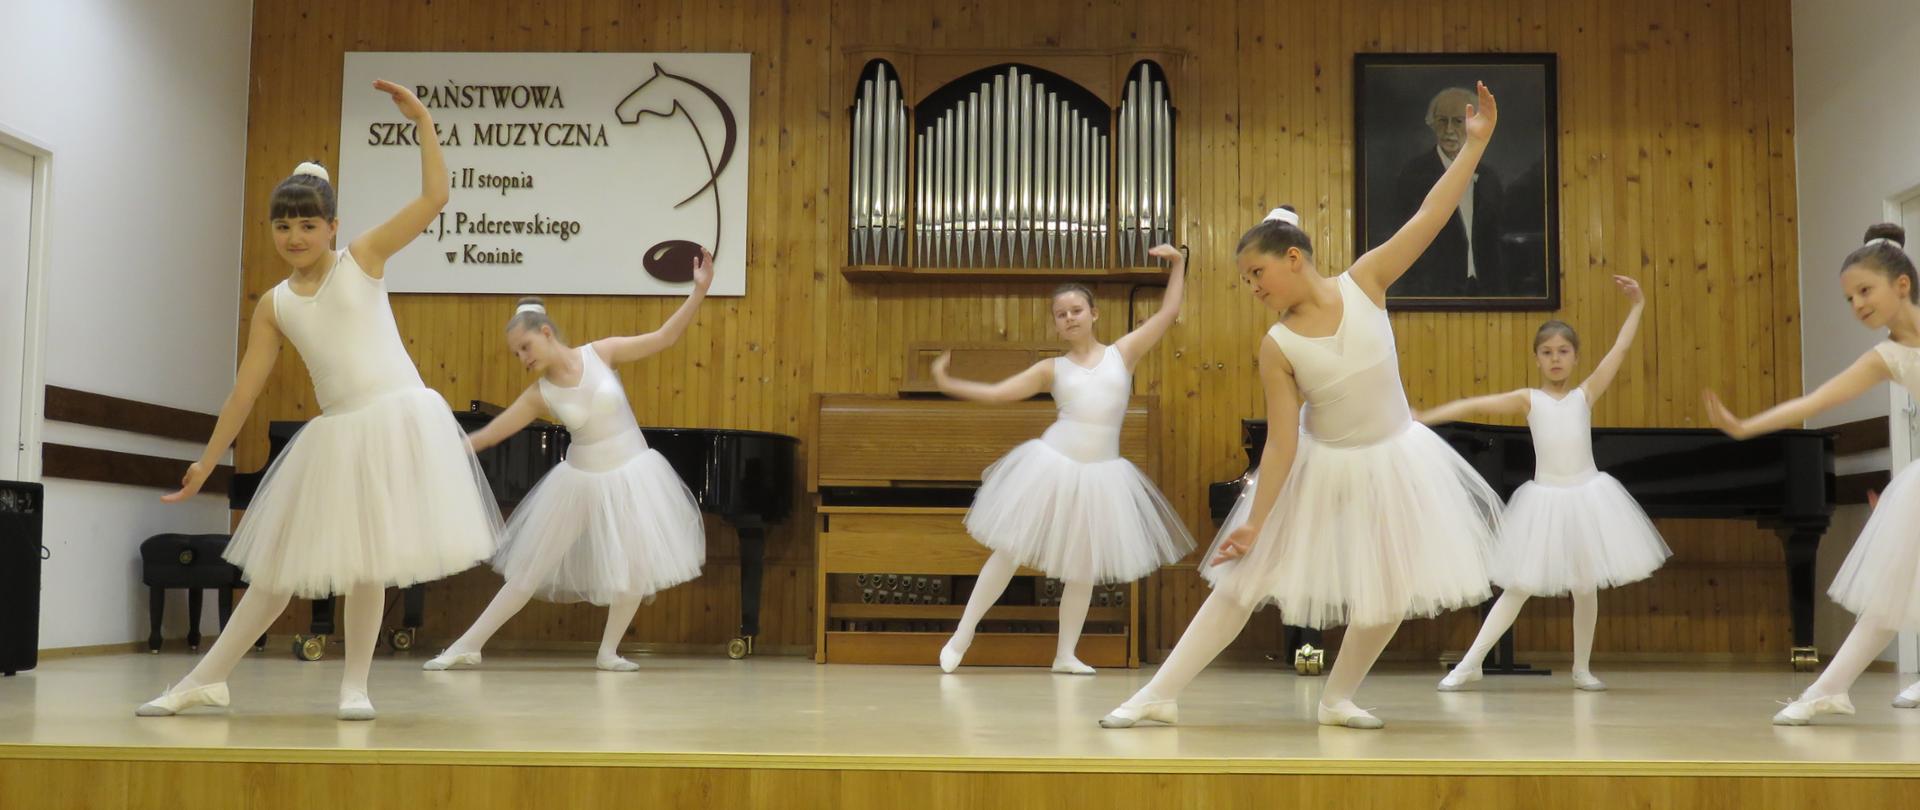 6 dziewczynek w stroju baletnicy tańczy na scenie PSM w Koninie